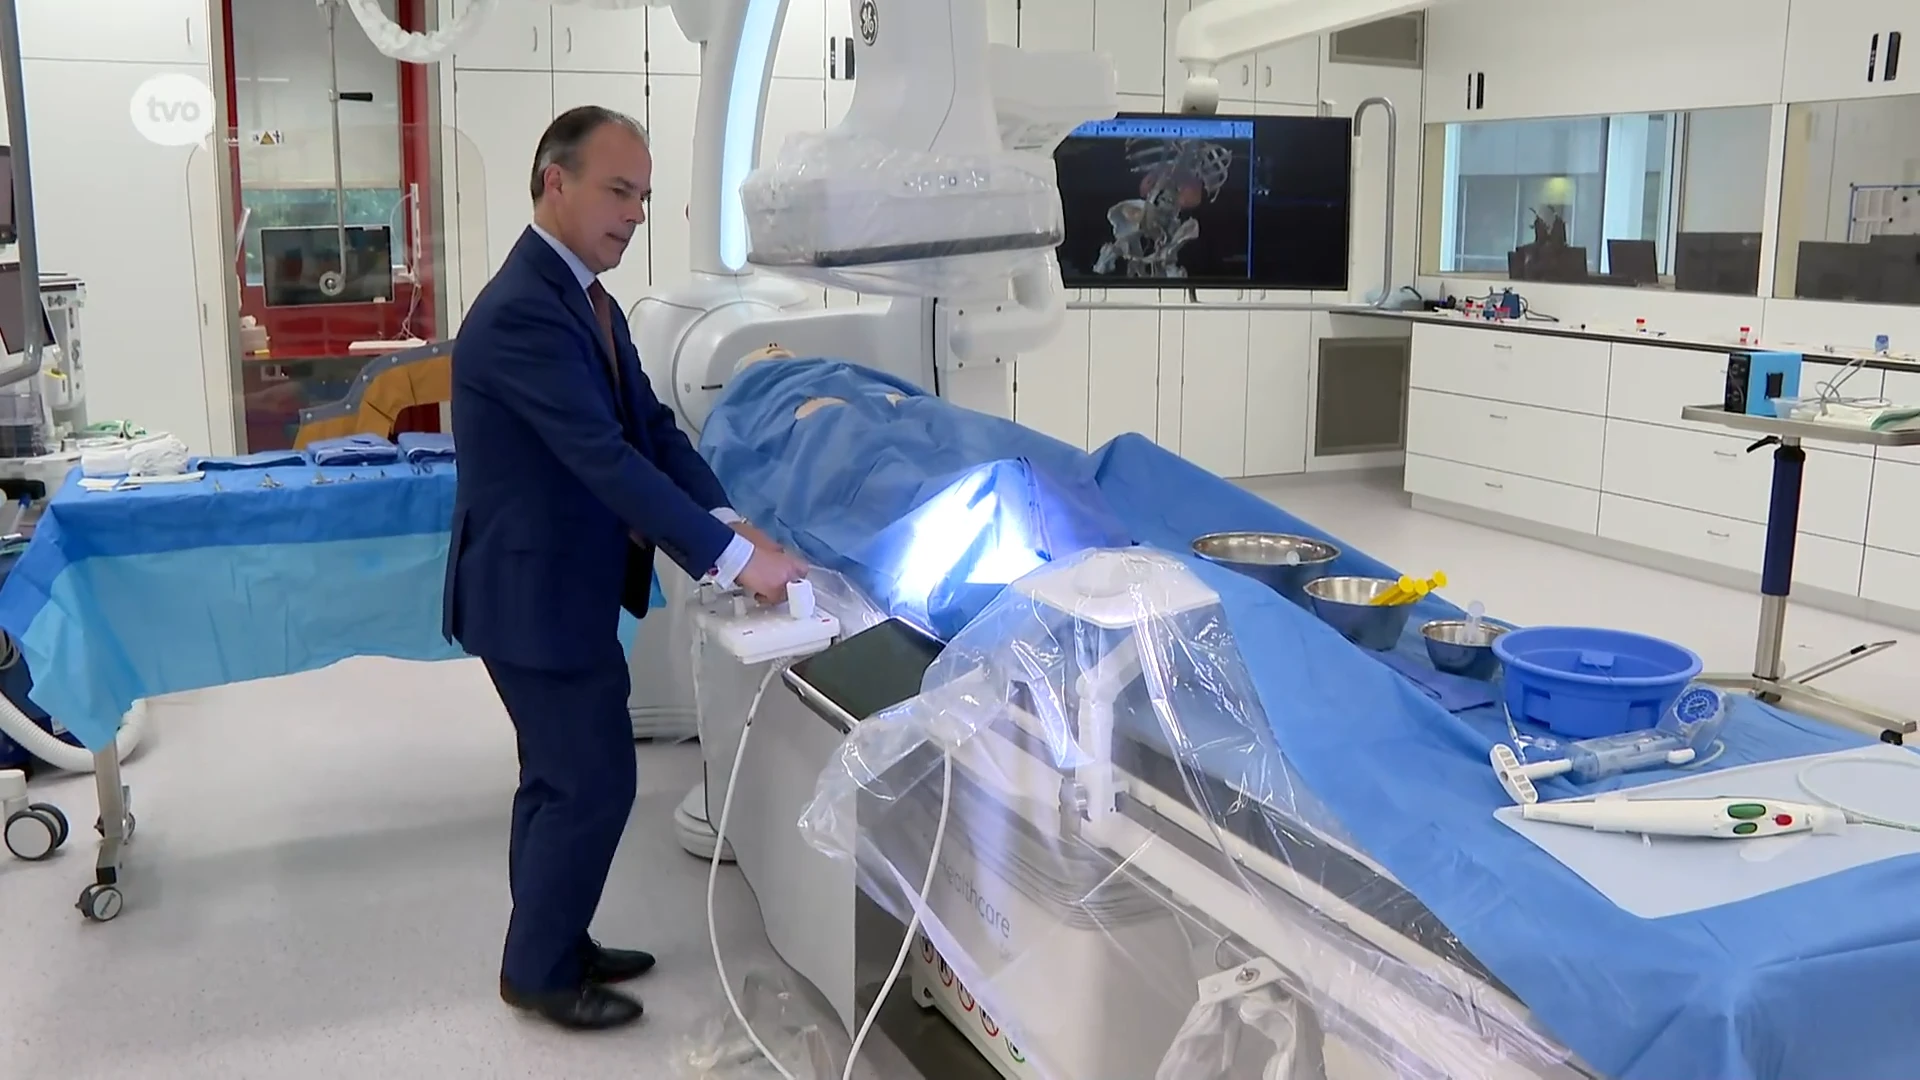 Nieuwe hybride operatiezaal voor vaatheelkunde is technologisch hoogstandje in AZ Sint-Blasius